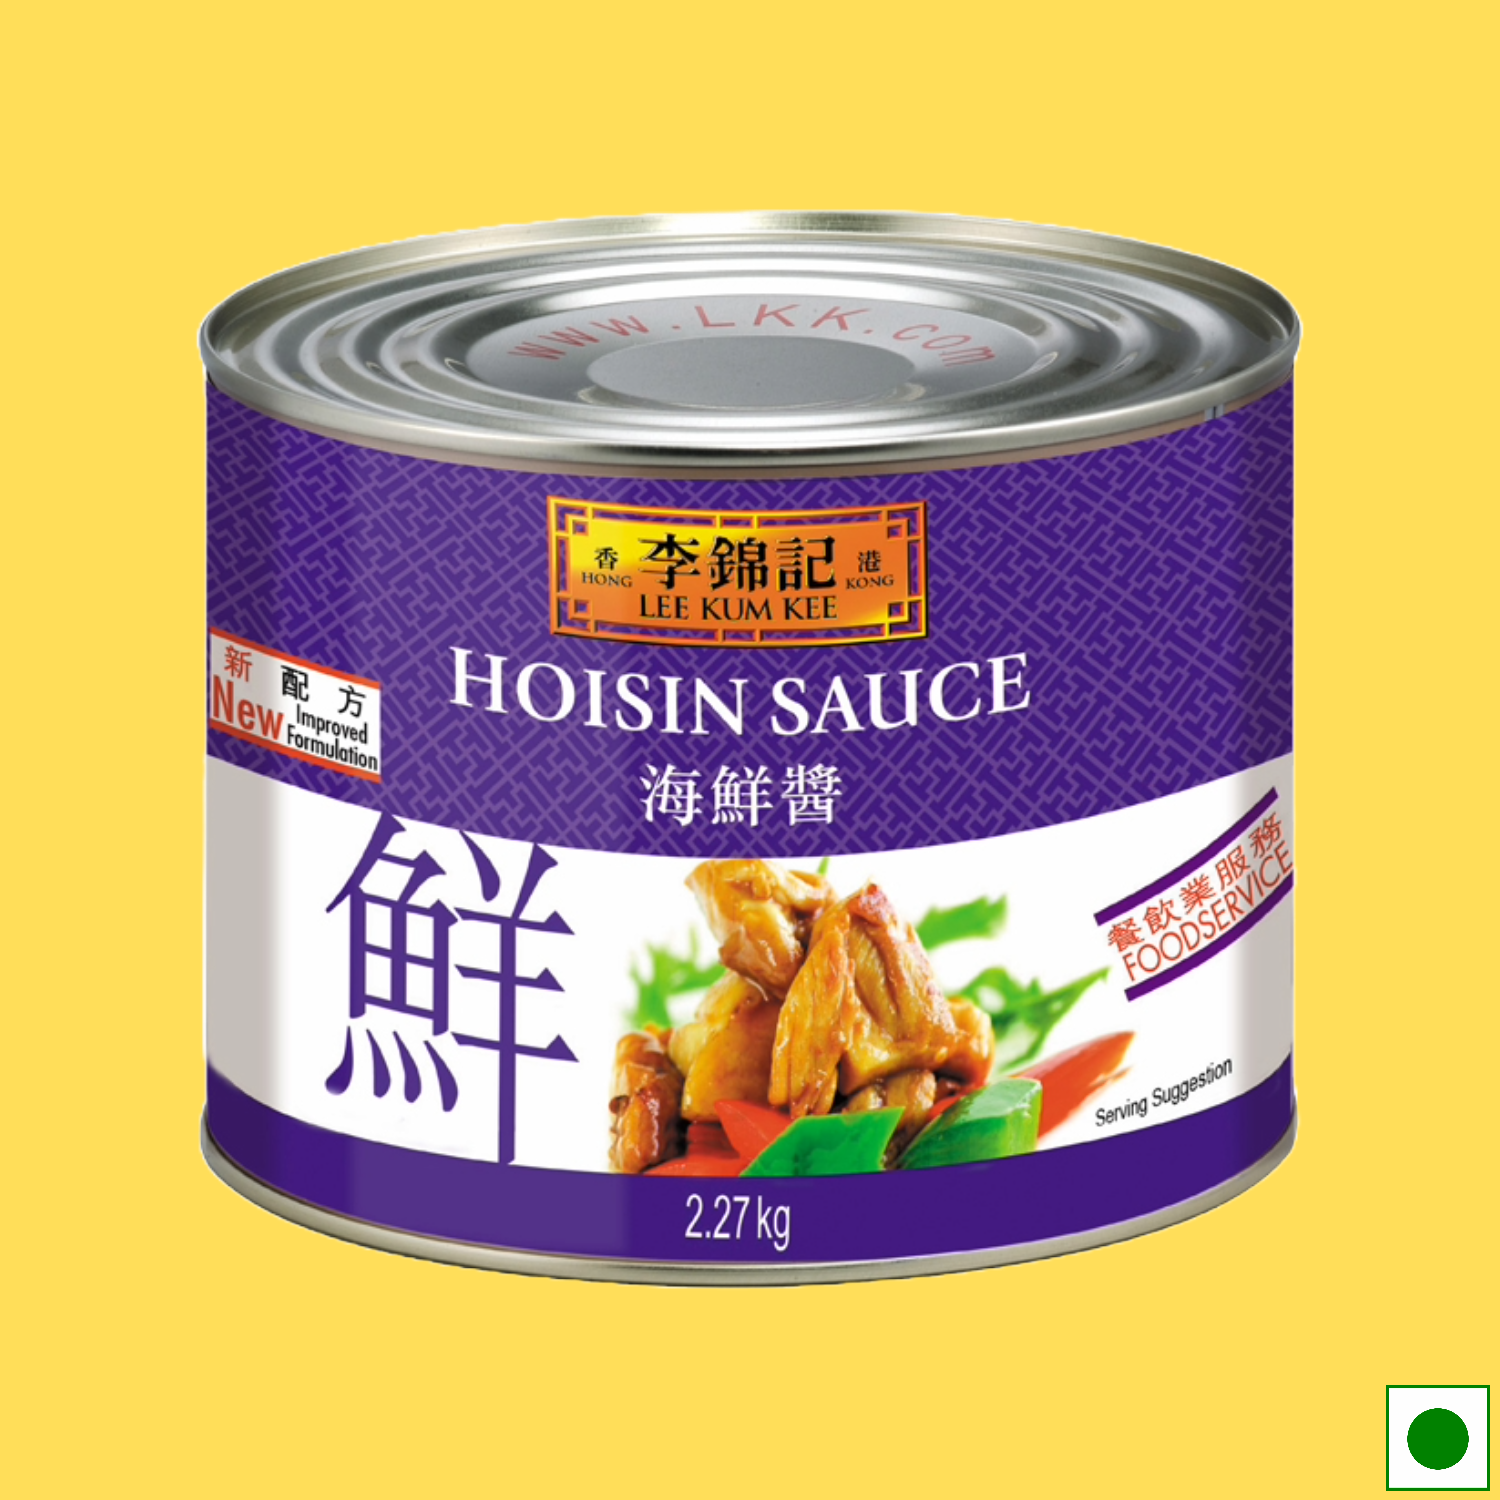 Lee Kum Kee Hoisin Sauce Tin, 2.27kg (Imported)